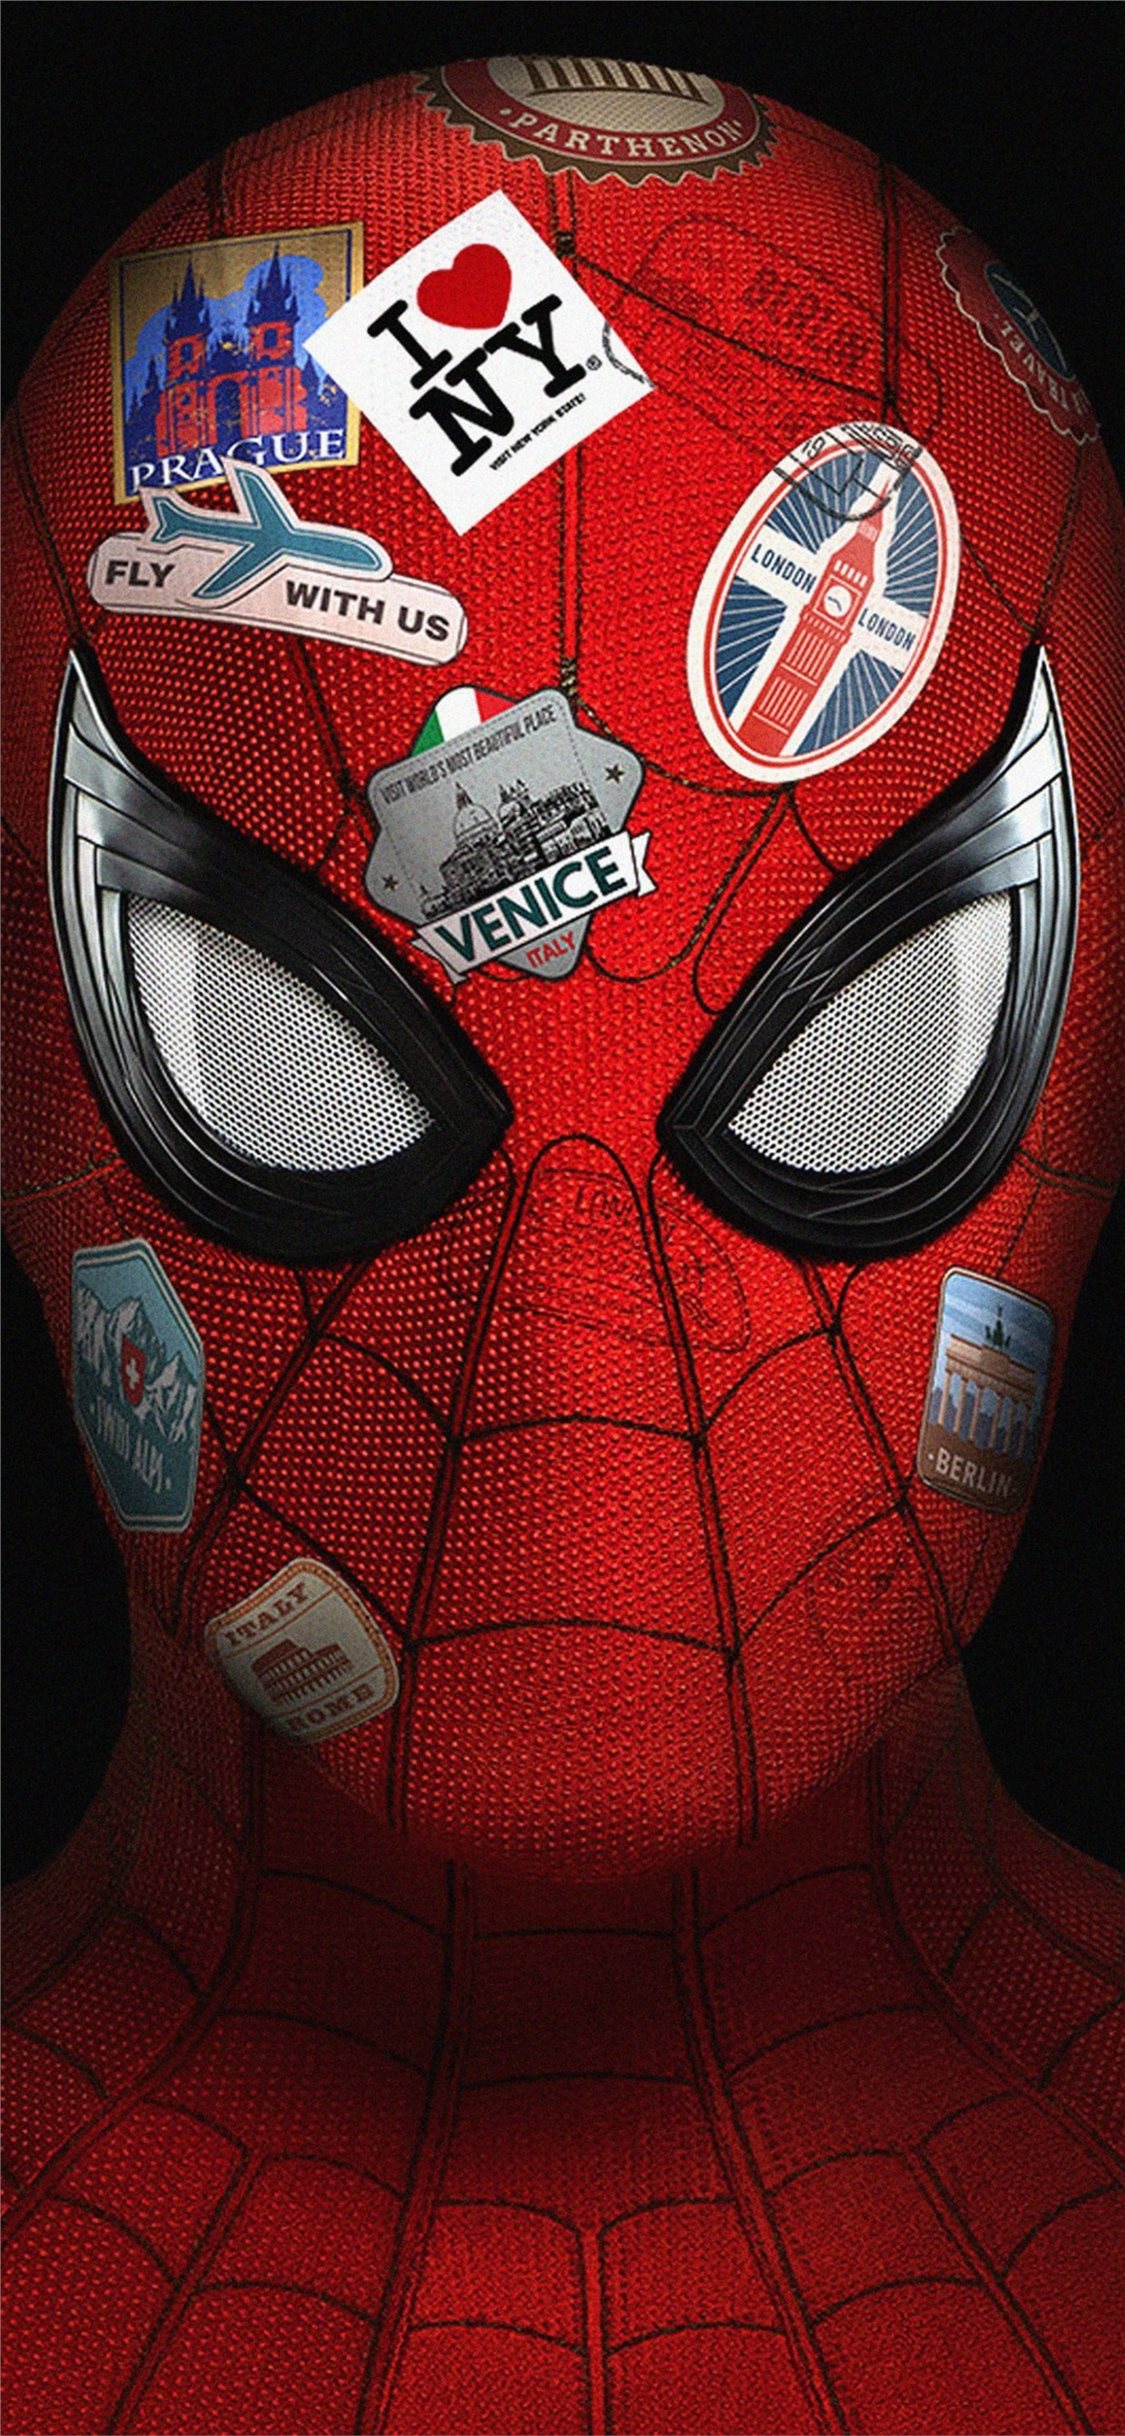 Hình nền 4K Spider Far From Home cho iPhone 11 quả thực là một lựa chọn tuyệt vời cho các fan hâm mộ siêu anh hùng. Tải về hoàn toàn miễn phí và sử dụng ngay để trang trí cho chiếc điện thoại của bạn.